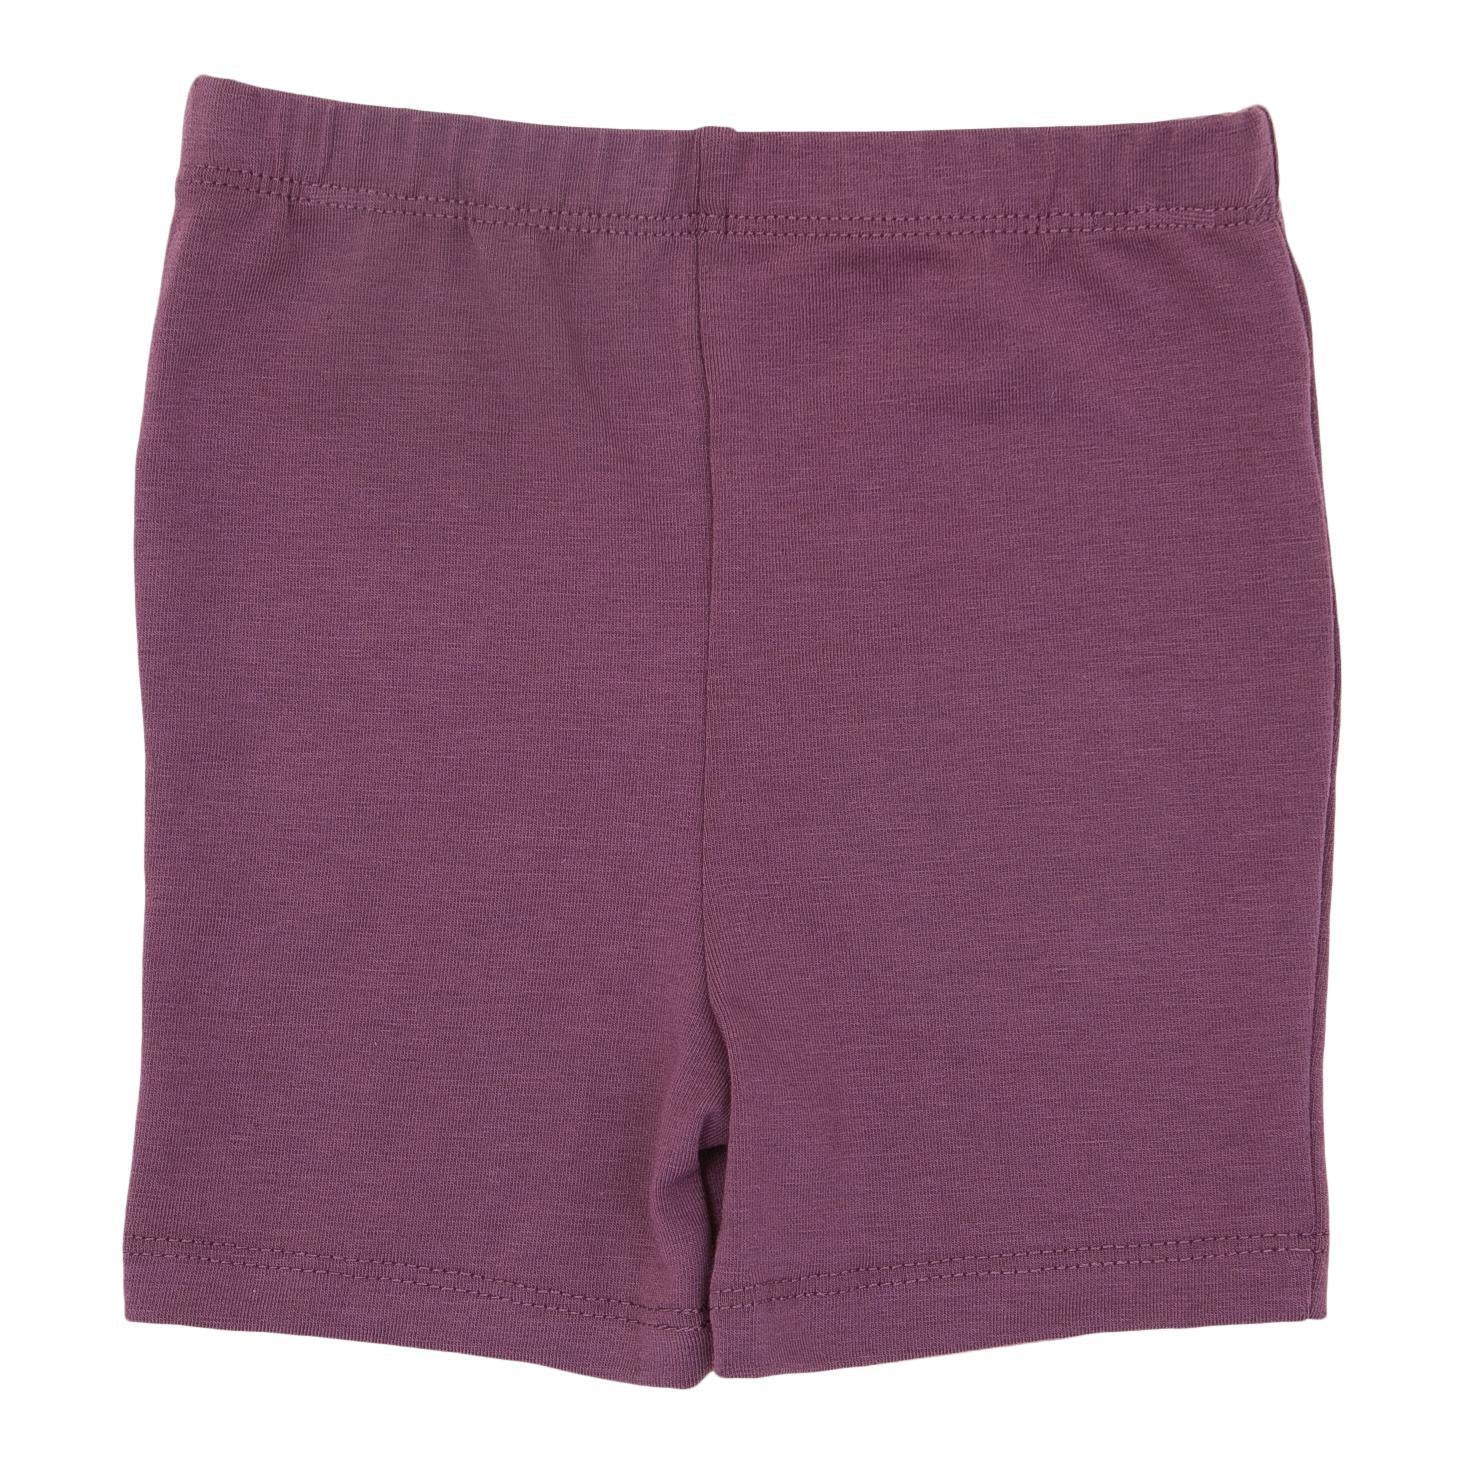 Vintage Violet Twirl Shorts - Twinkle Twinkle Little One